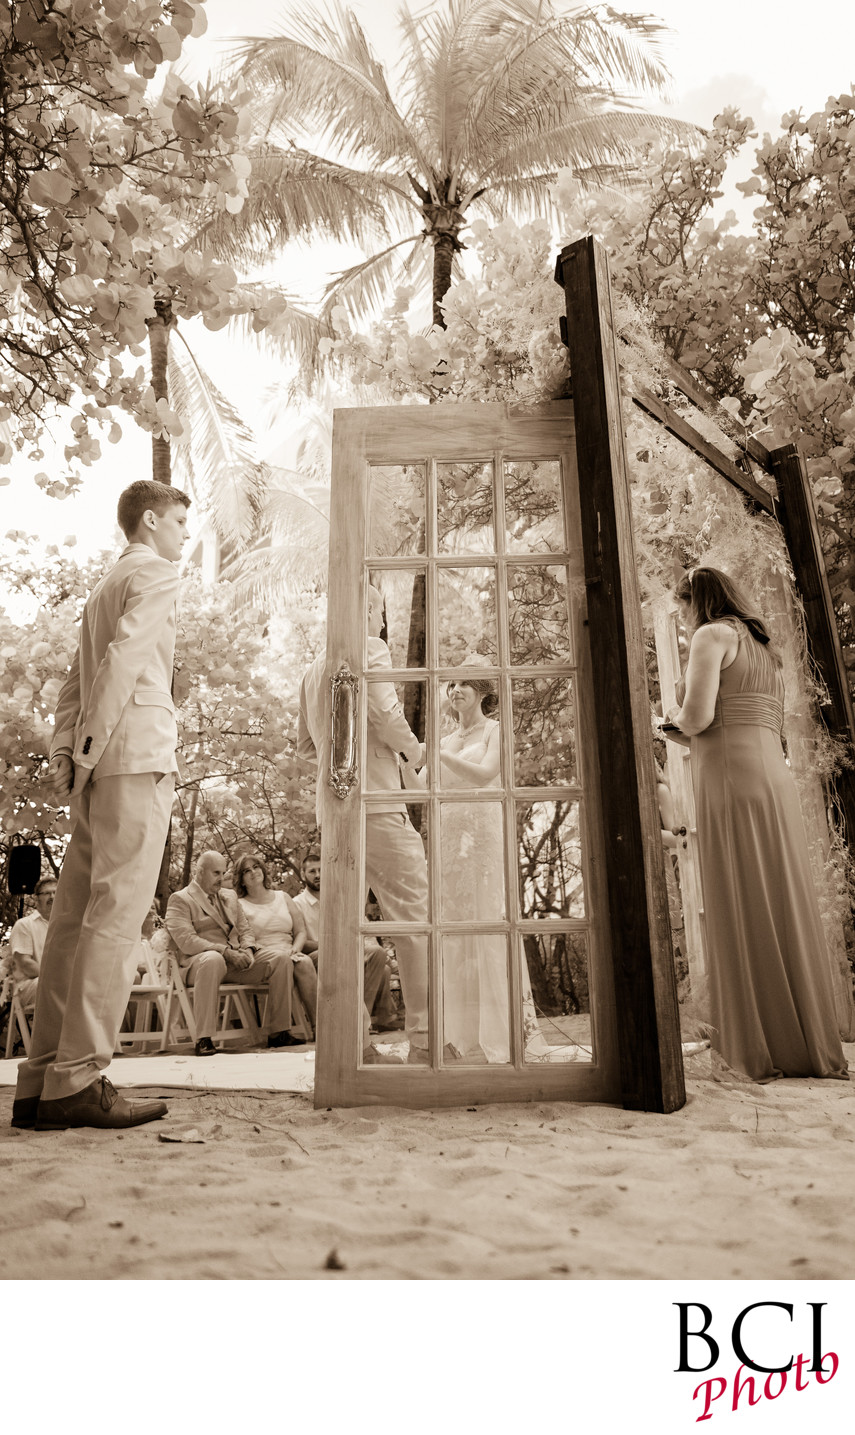 Wedding ceremonies with wood doors